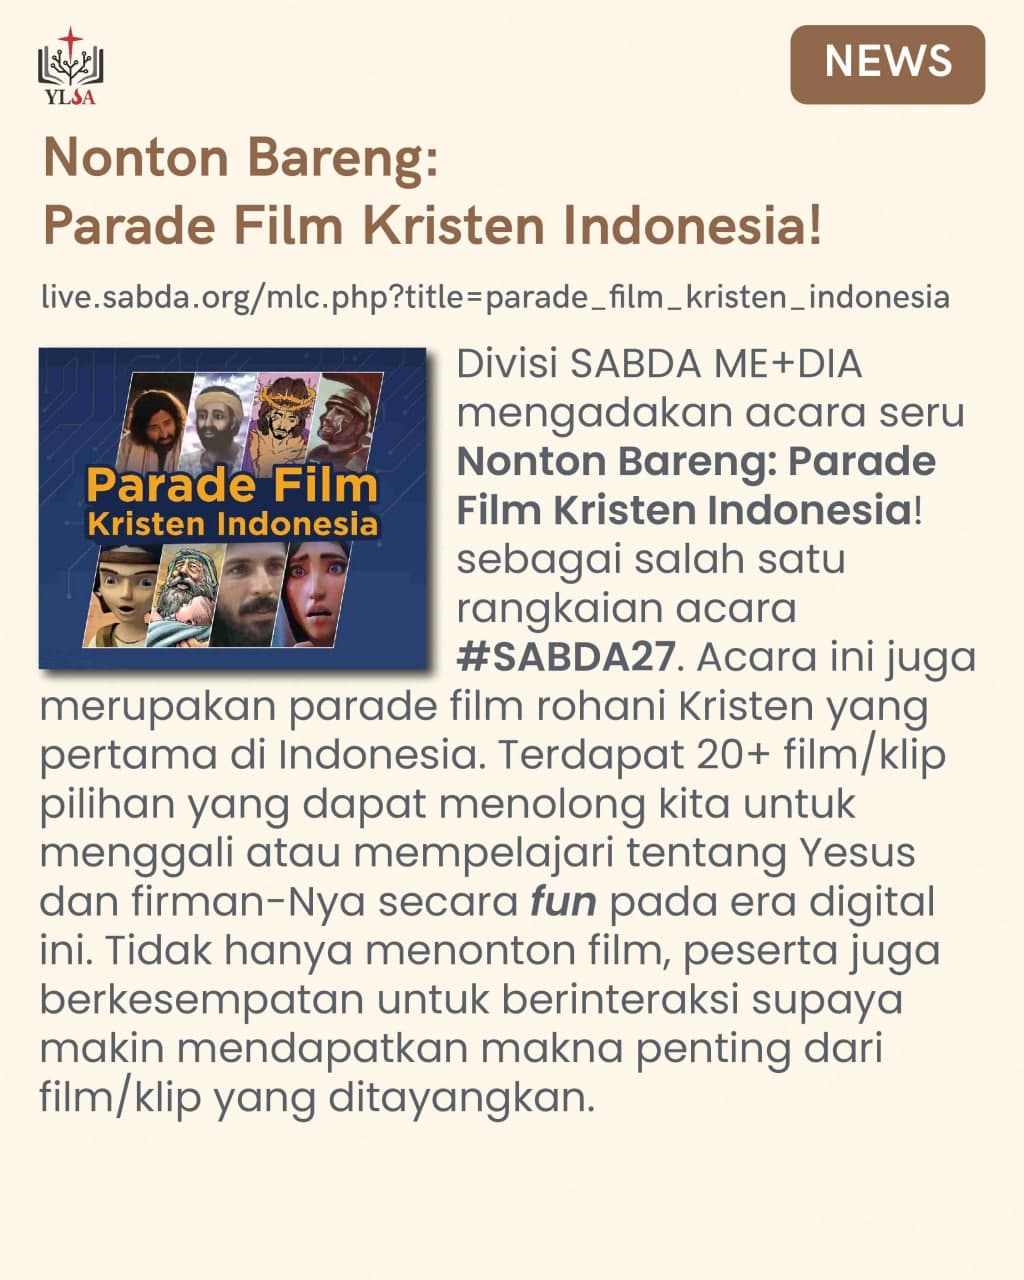 Parade film Kristen Indonesia adalah parade film rohani Kristen yang pertama di Indonesia.